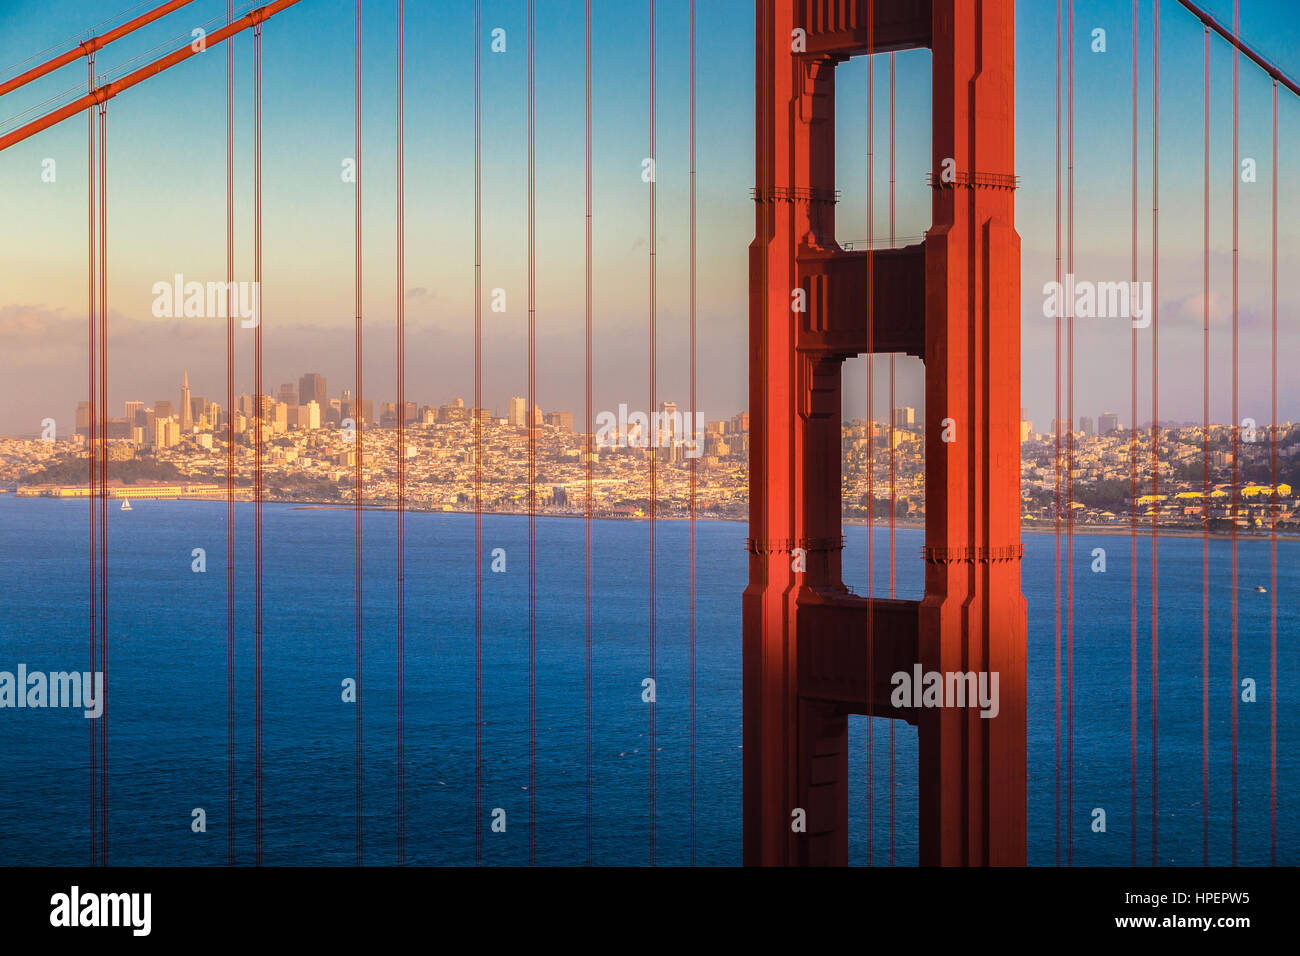 Klassische Ansicht der berühmten Golden Gate Bridge mit der Skyline von San Francisco im Hintergrund beleuchtet im schönen goldenen Abendlicht bei Sonnenuntergang Stockfoto